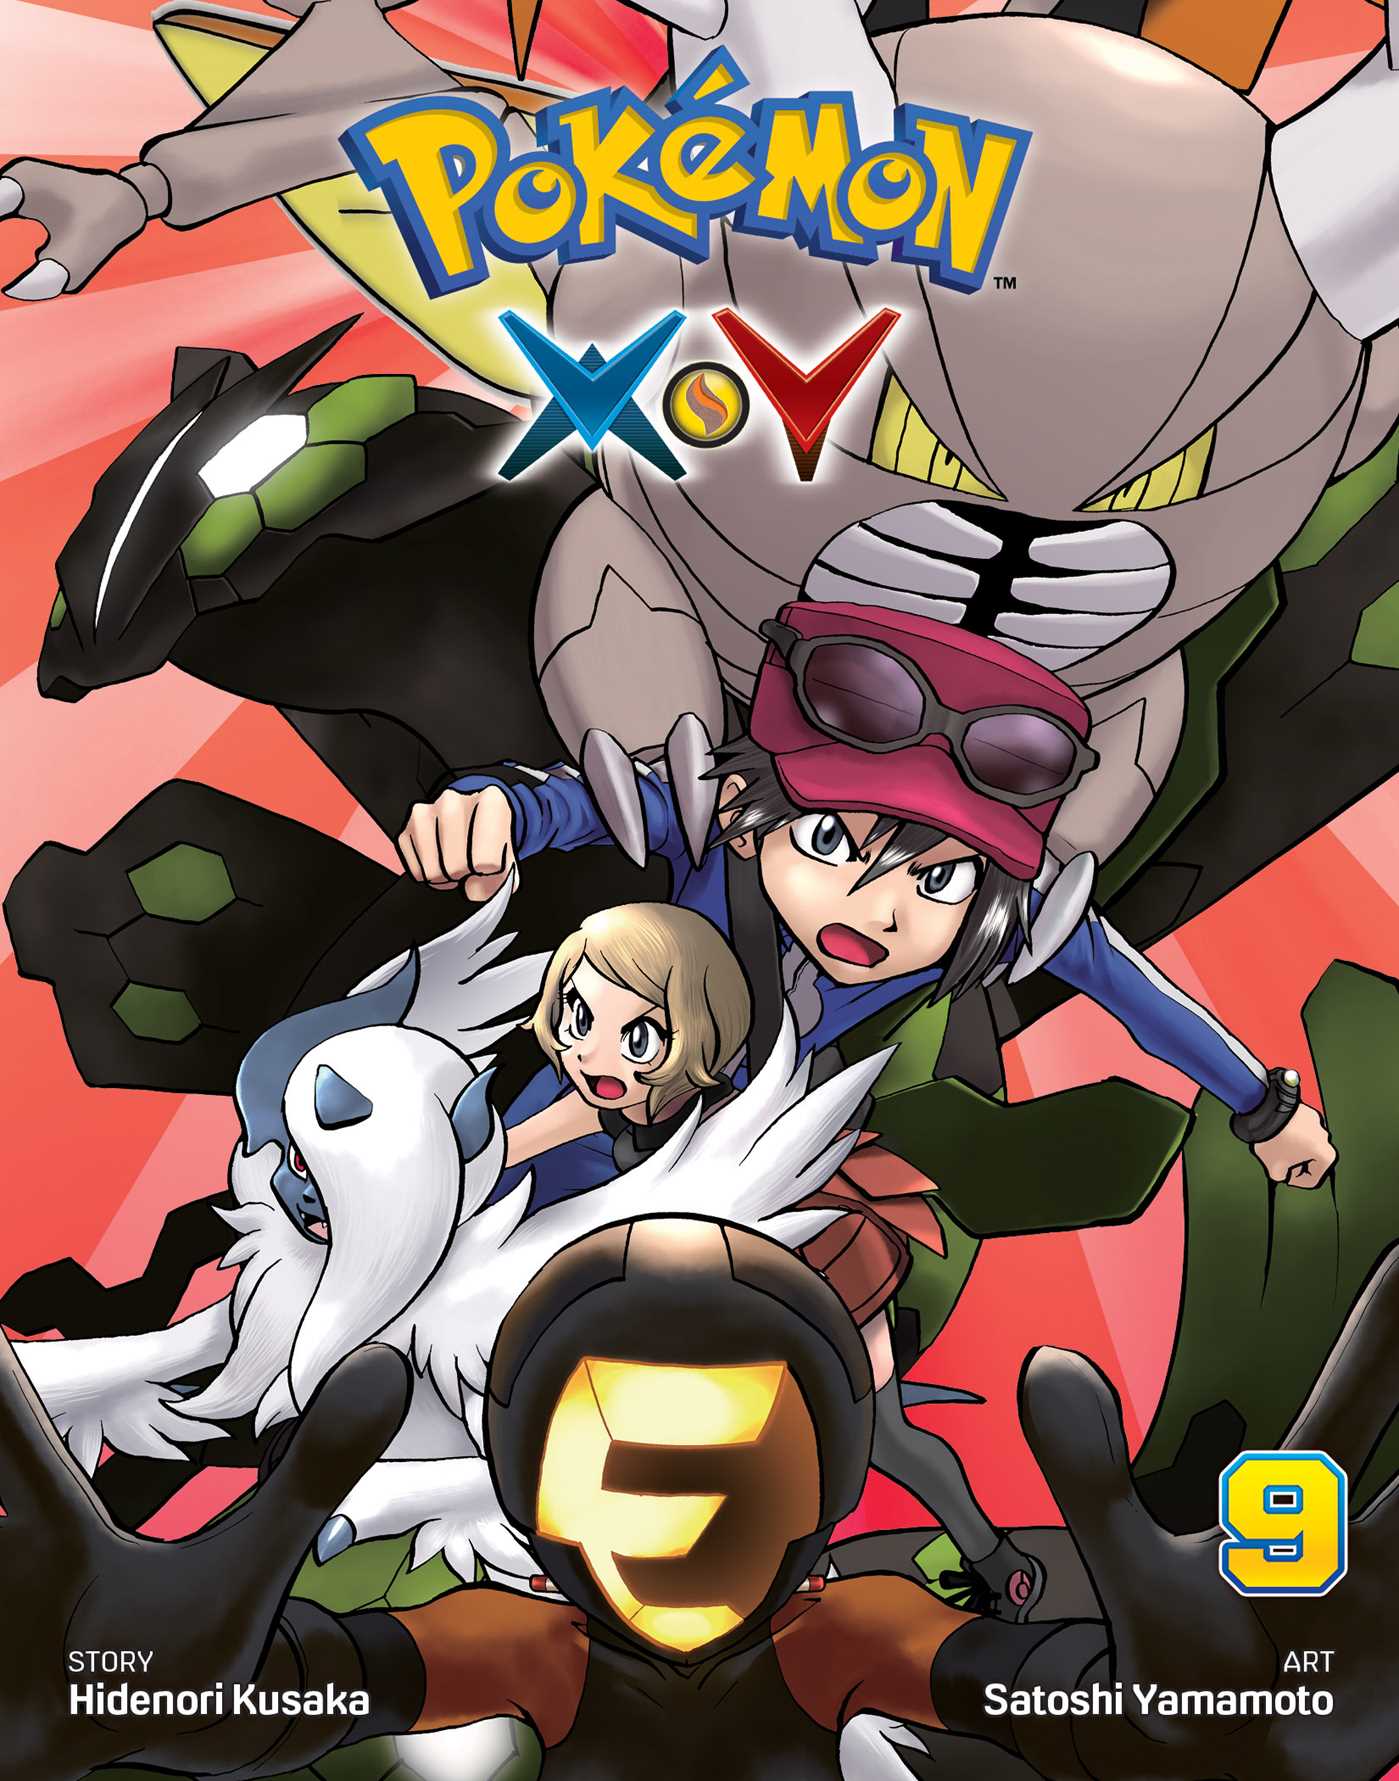 Pokémon X (CD) - Bulbapedia, the community-driven Pokémon encyclopedia